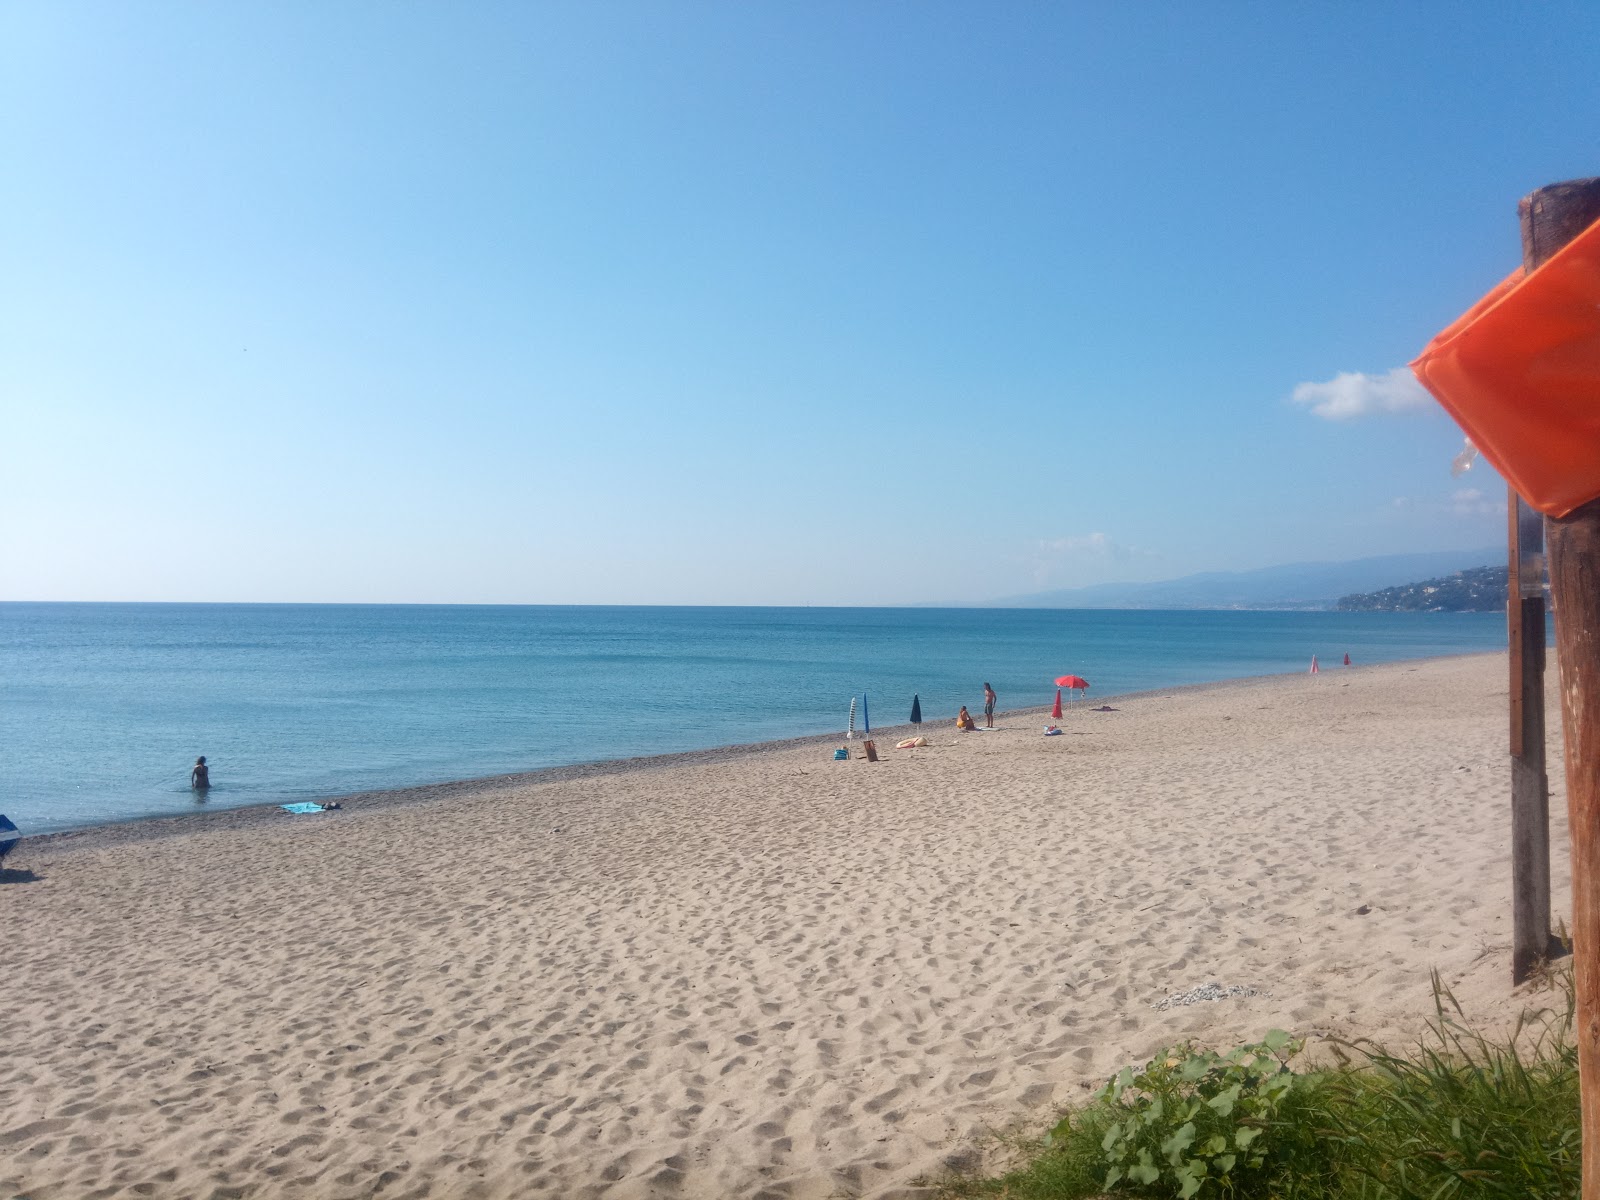 Villaggio le Roccelle beach'in fotoğrafı mavi sular yüzey ile